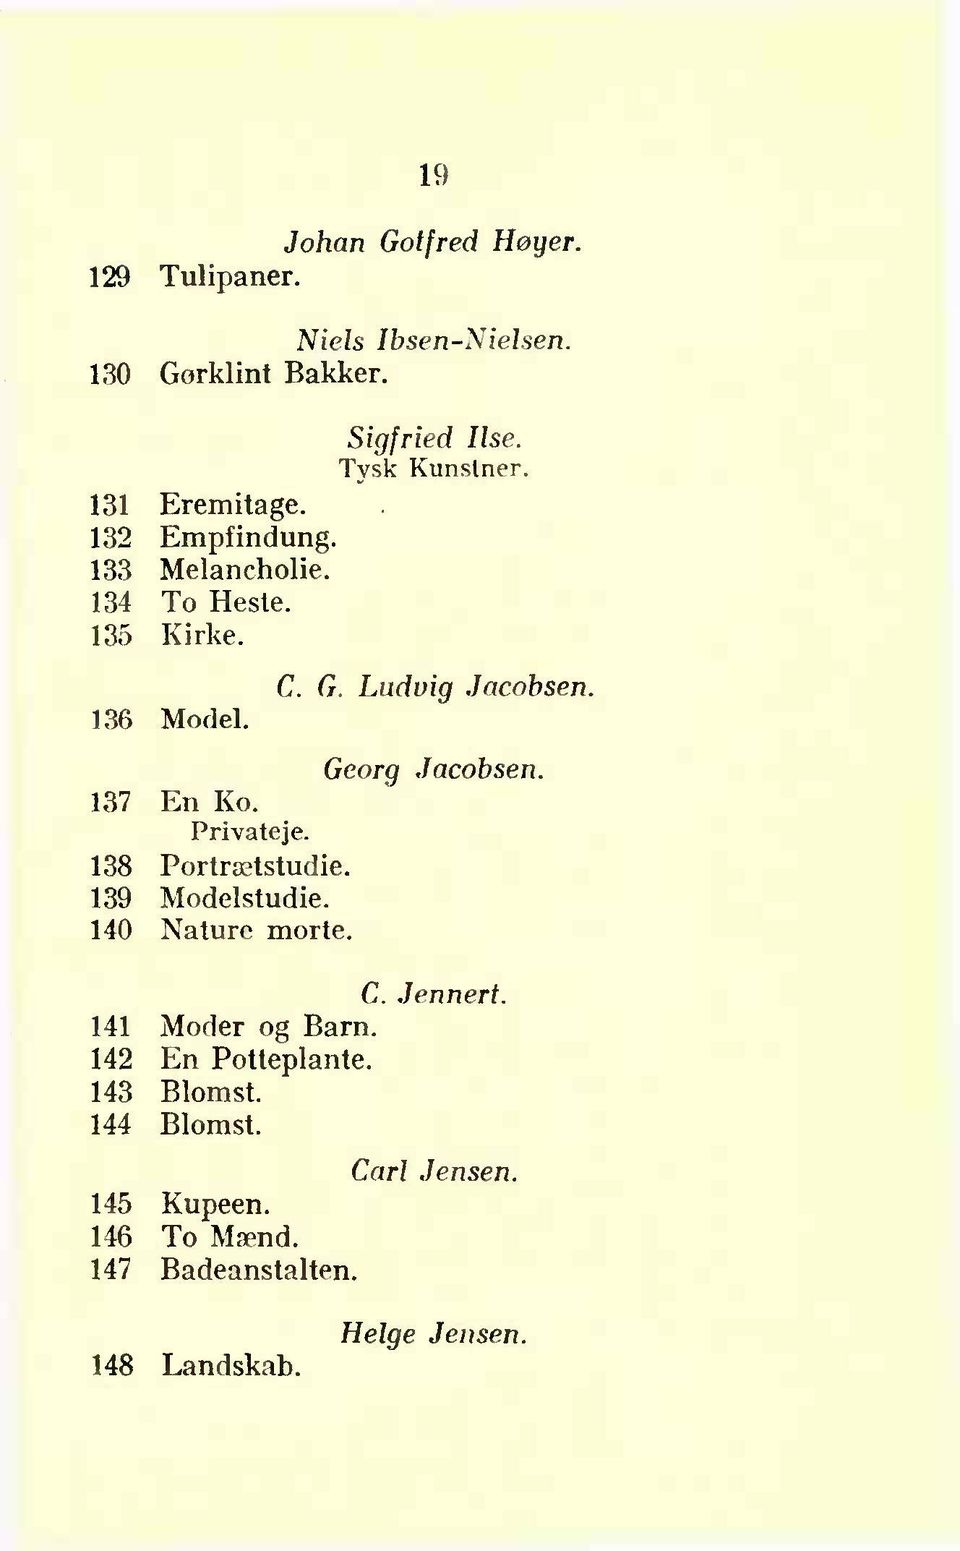 Georg Jacobsen. 137 En Ko. 138 Portrætstudie. 139 Modelstudie. 140 Nature morte. C. Jennert. 141 Moder og Barn.